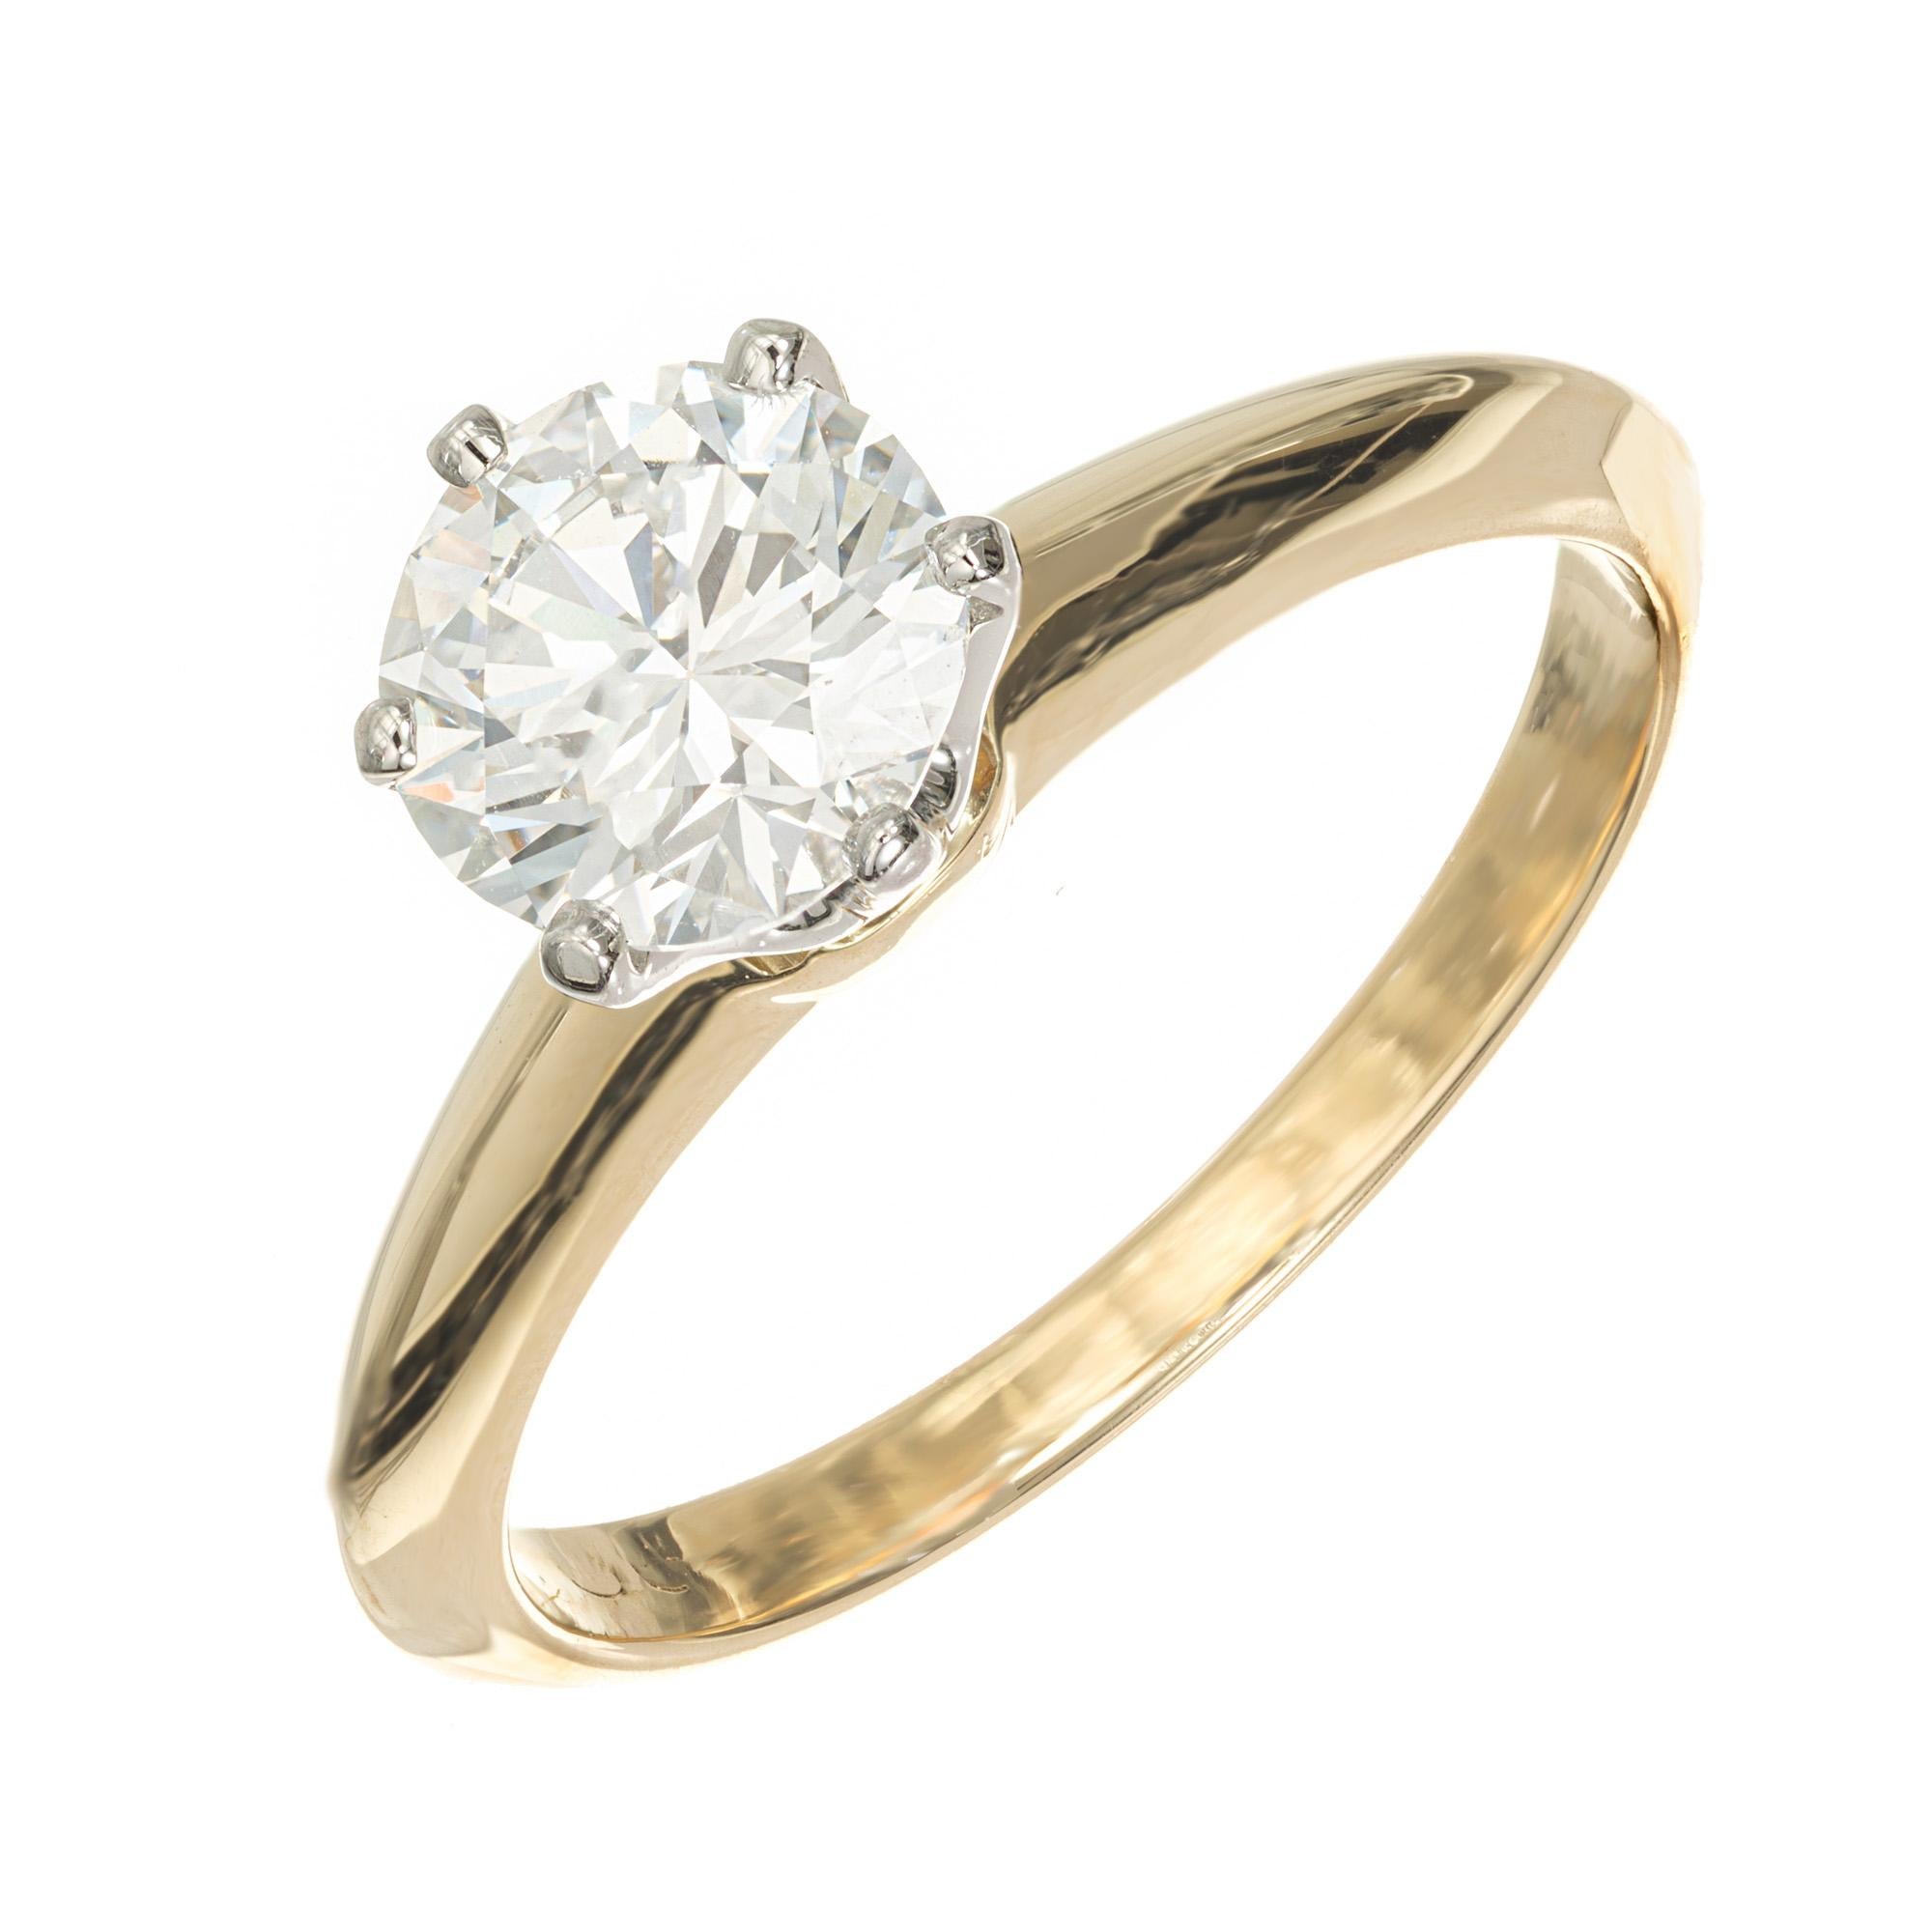 Vintage 1990's Tiffany & Co Diamant Solitär Verlobungsring. GIA-zertifizierter runder Brillant in einer sechszackigen Krone aus Platin auf einer Fassung aus 18 Karat Gelbgold. GIA zertifiziert als F (farblos) und VS2. In den 1990er Jahren verwendete